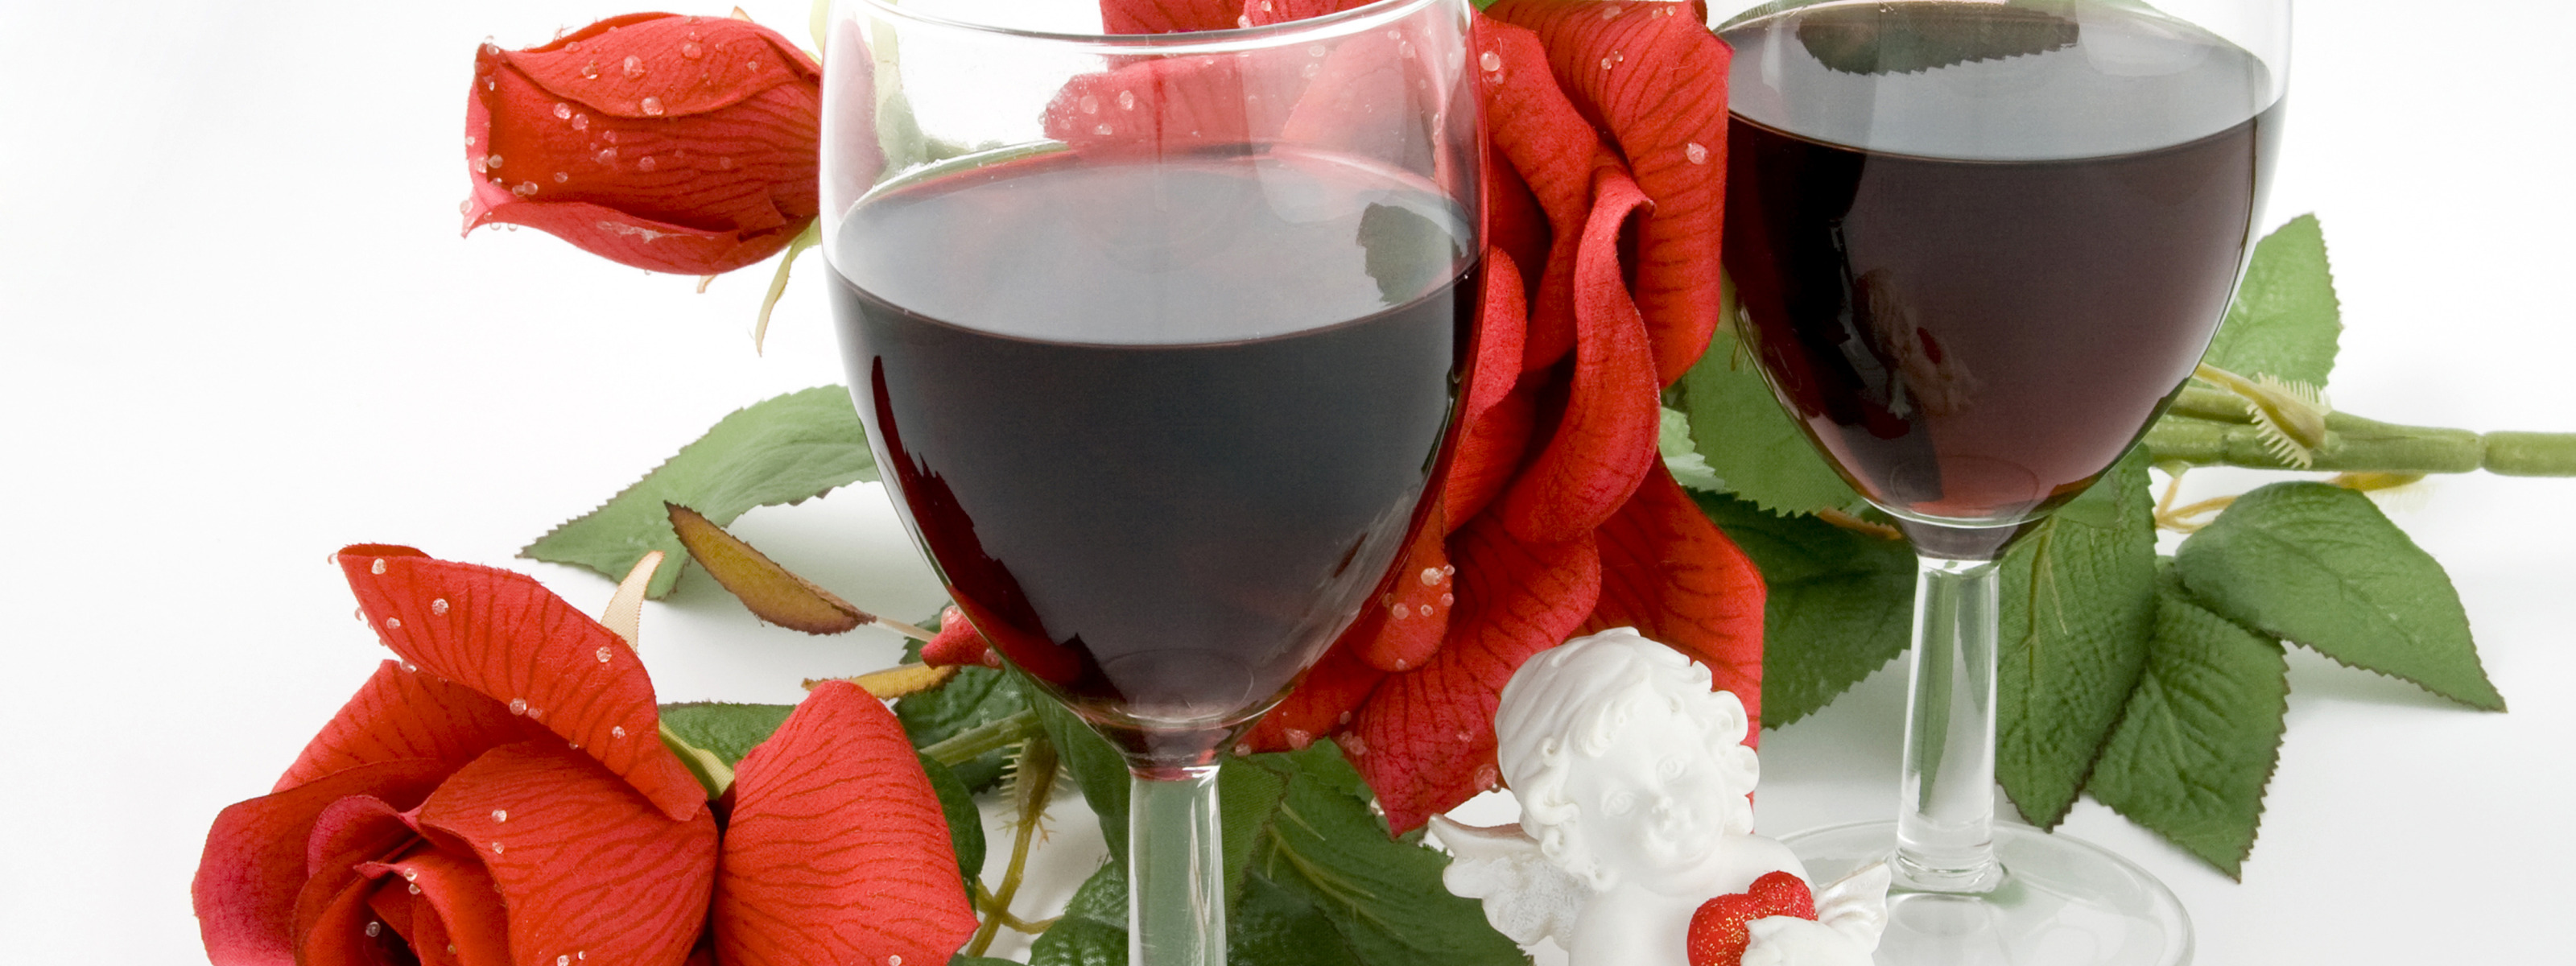 Роз вин. Розе вино. Красные розы и вино.